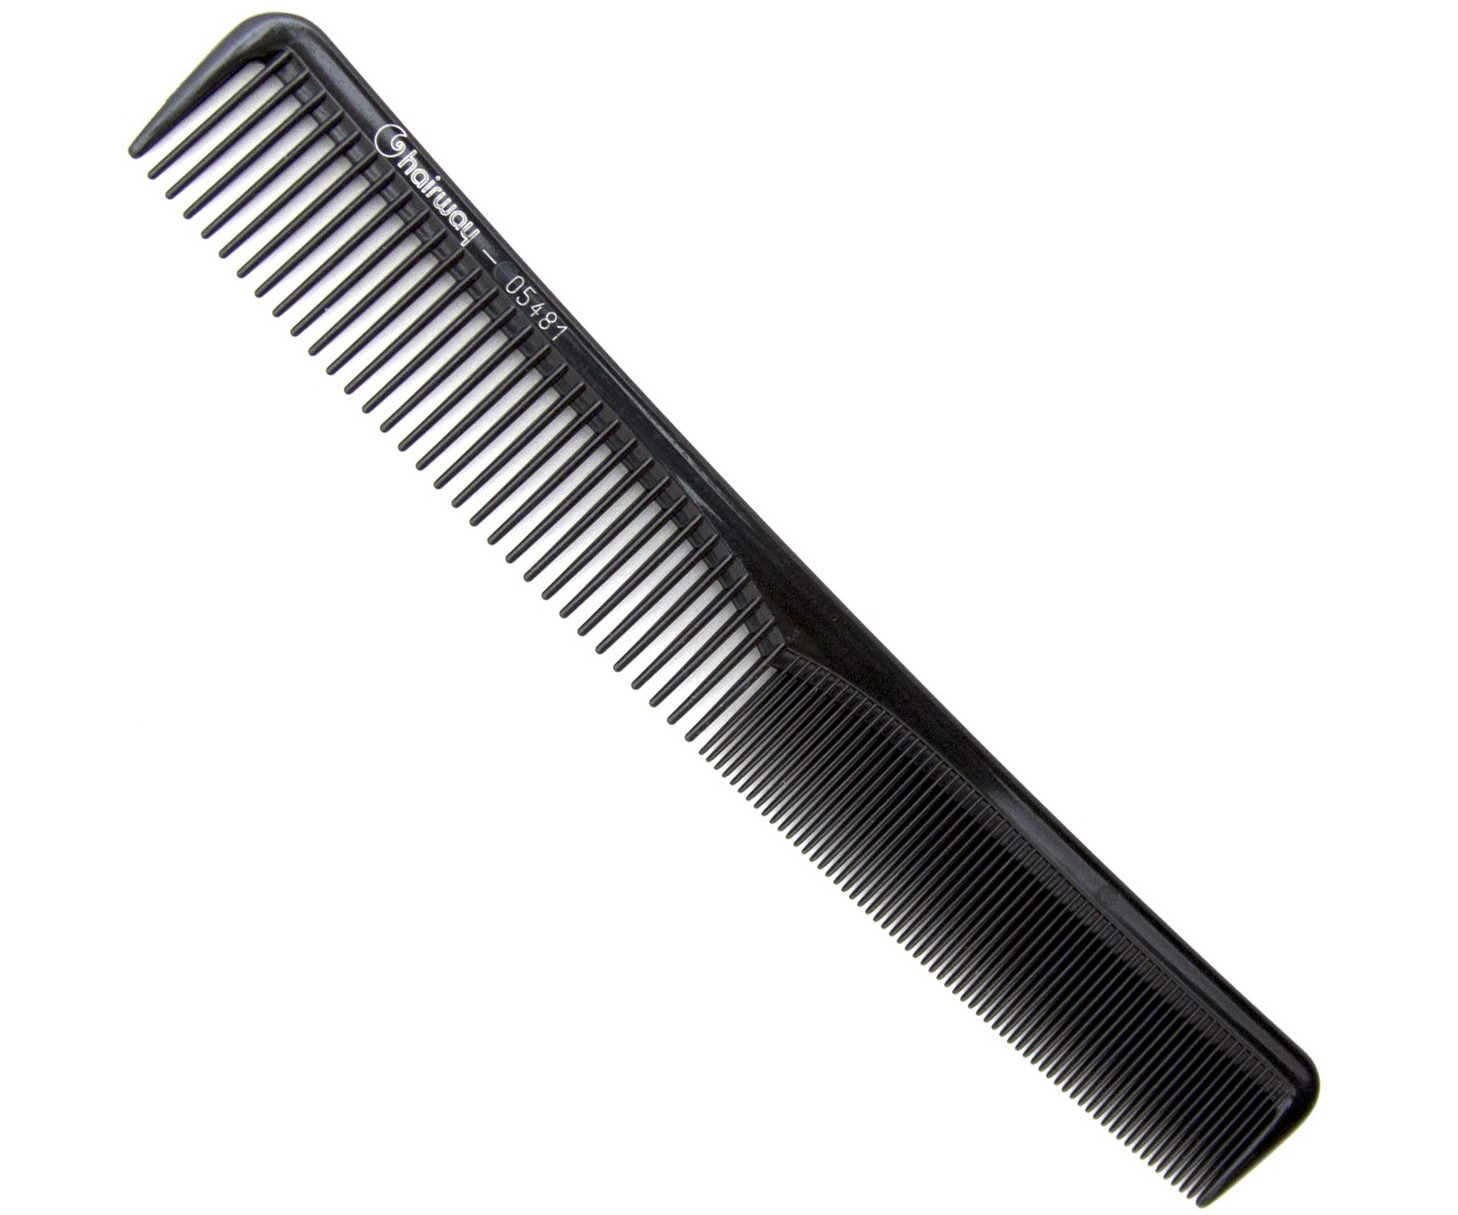 Hřeben na stříhání vlasů Hairway Excellence 05481 - 175 mm